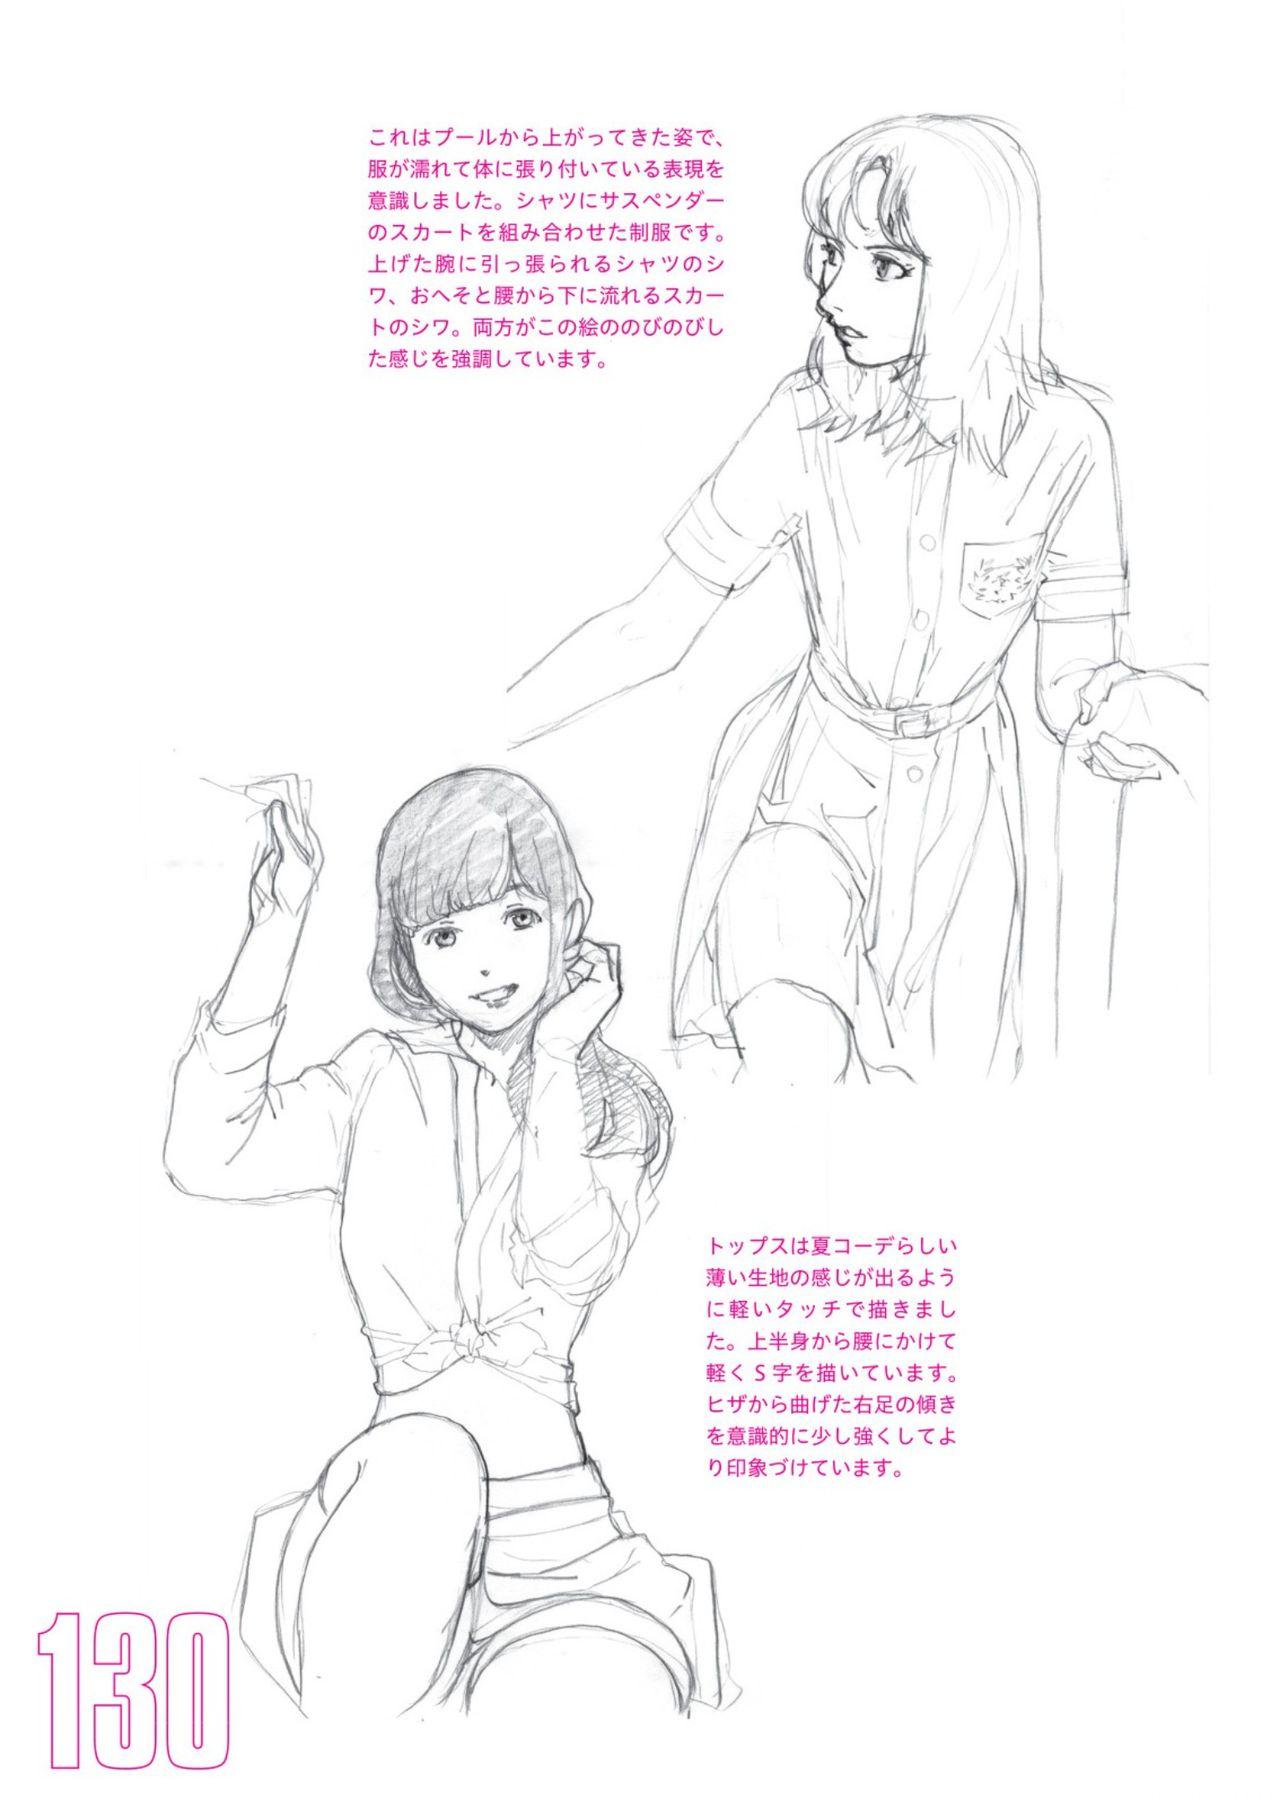 Toru Yoshida Tips for drawing women in 10 minutes 270 Uniforms 131